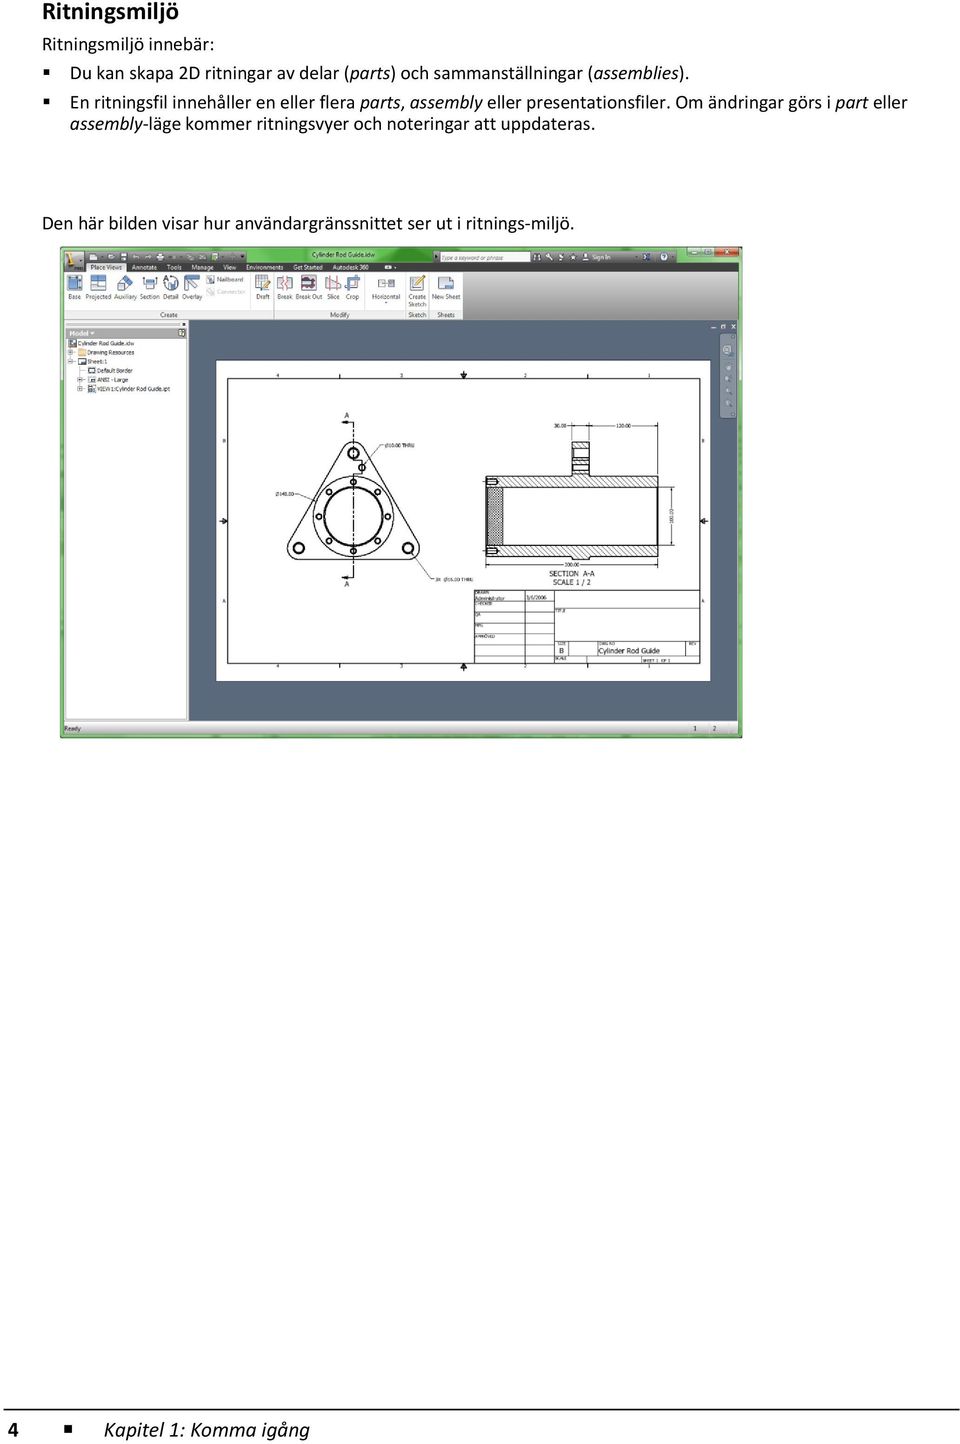 En ritningsfil innehåller en eller flera parts, assembly eller presentationsfiler.